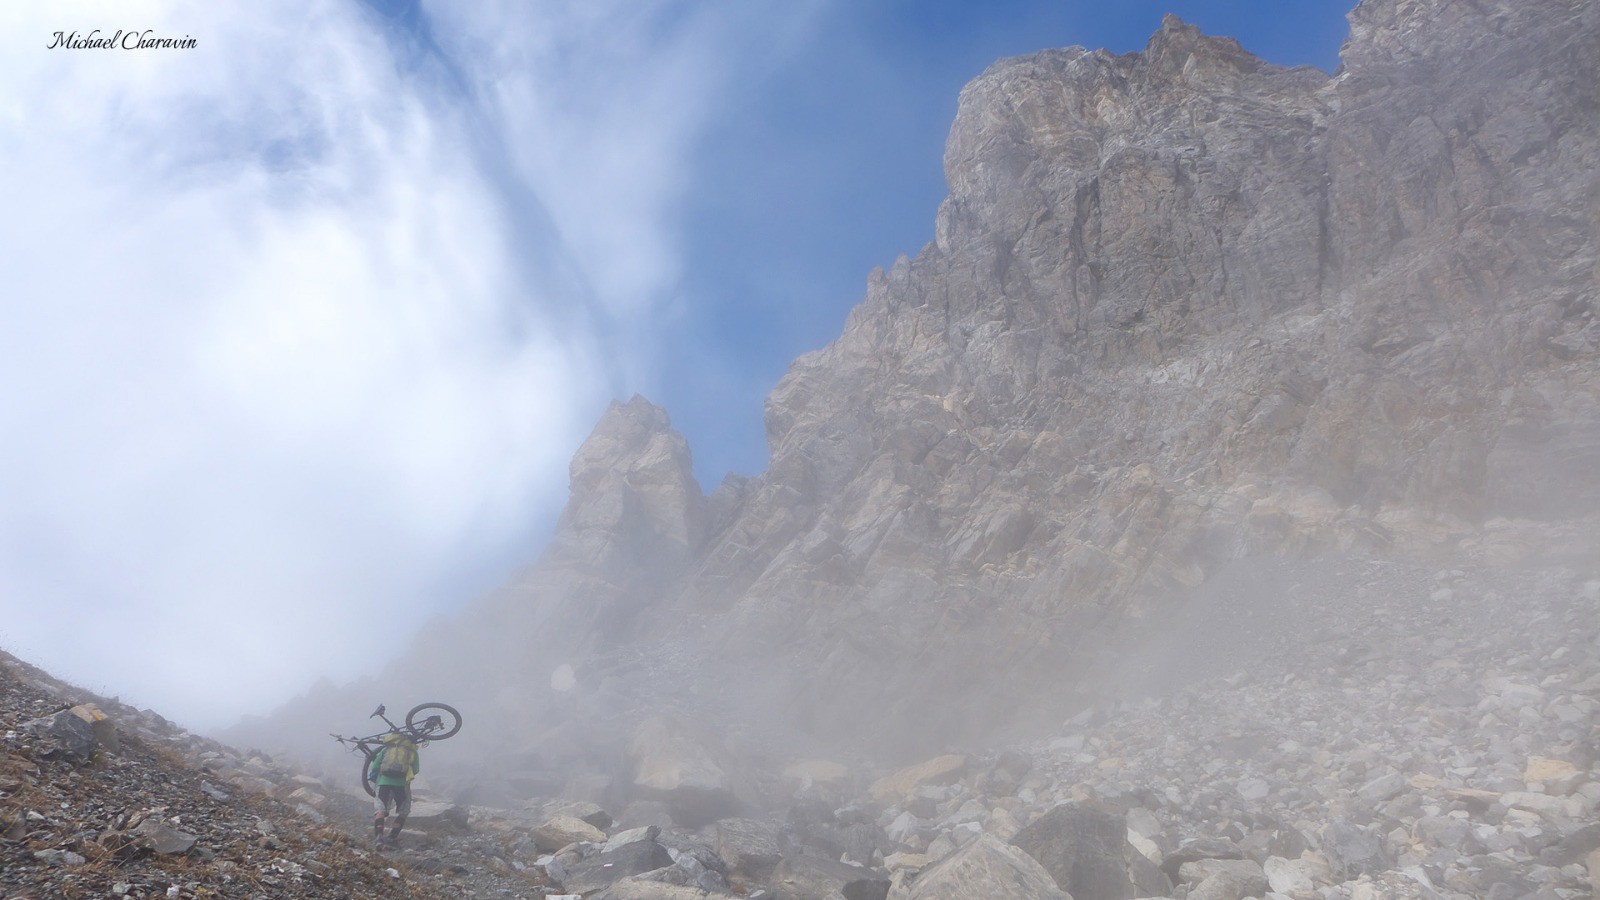 Le premier challenge du jour est le franchissement du col de Stroppia (2865 m).